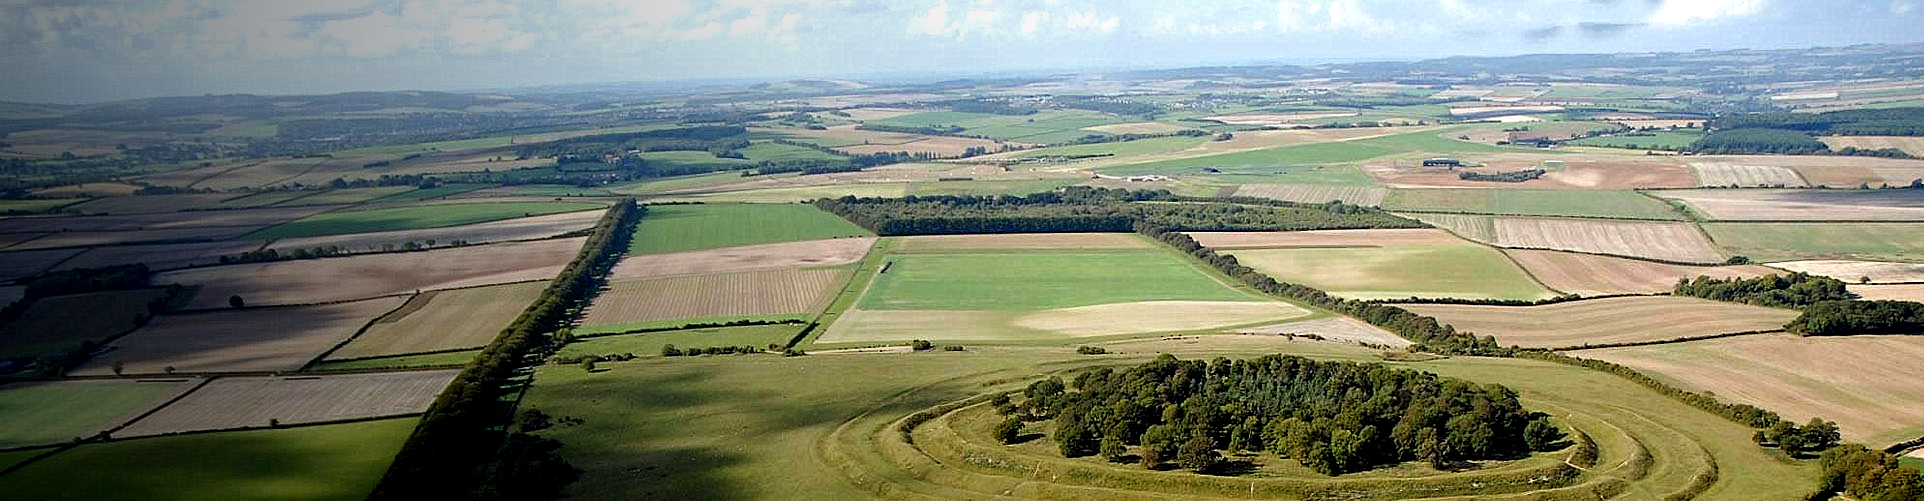 Aerial photo of Badbury Rings